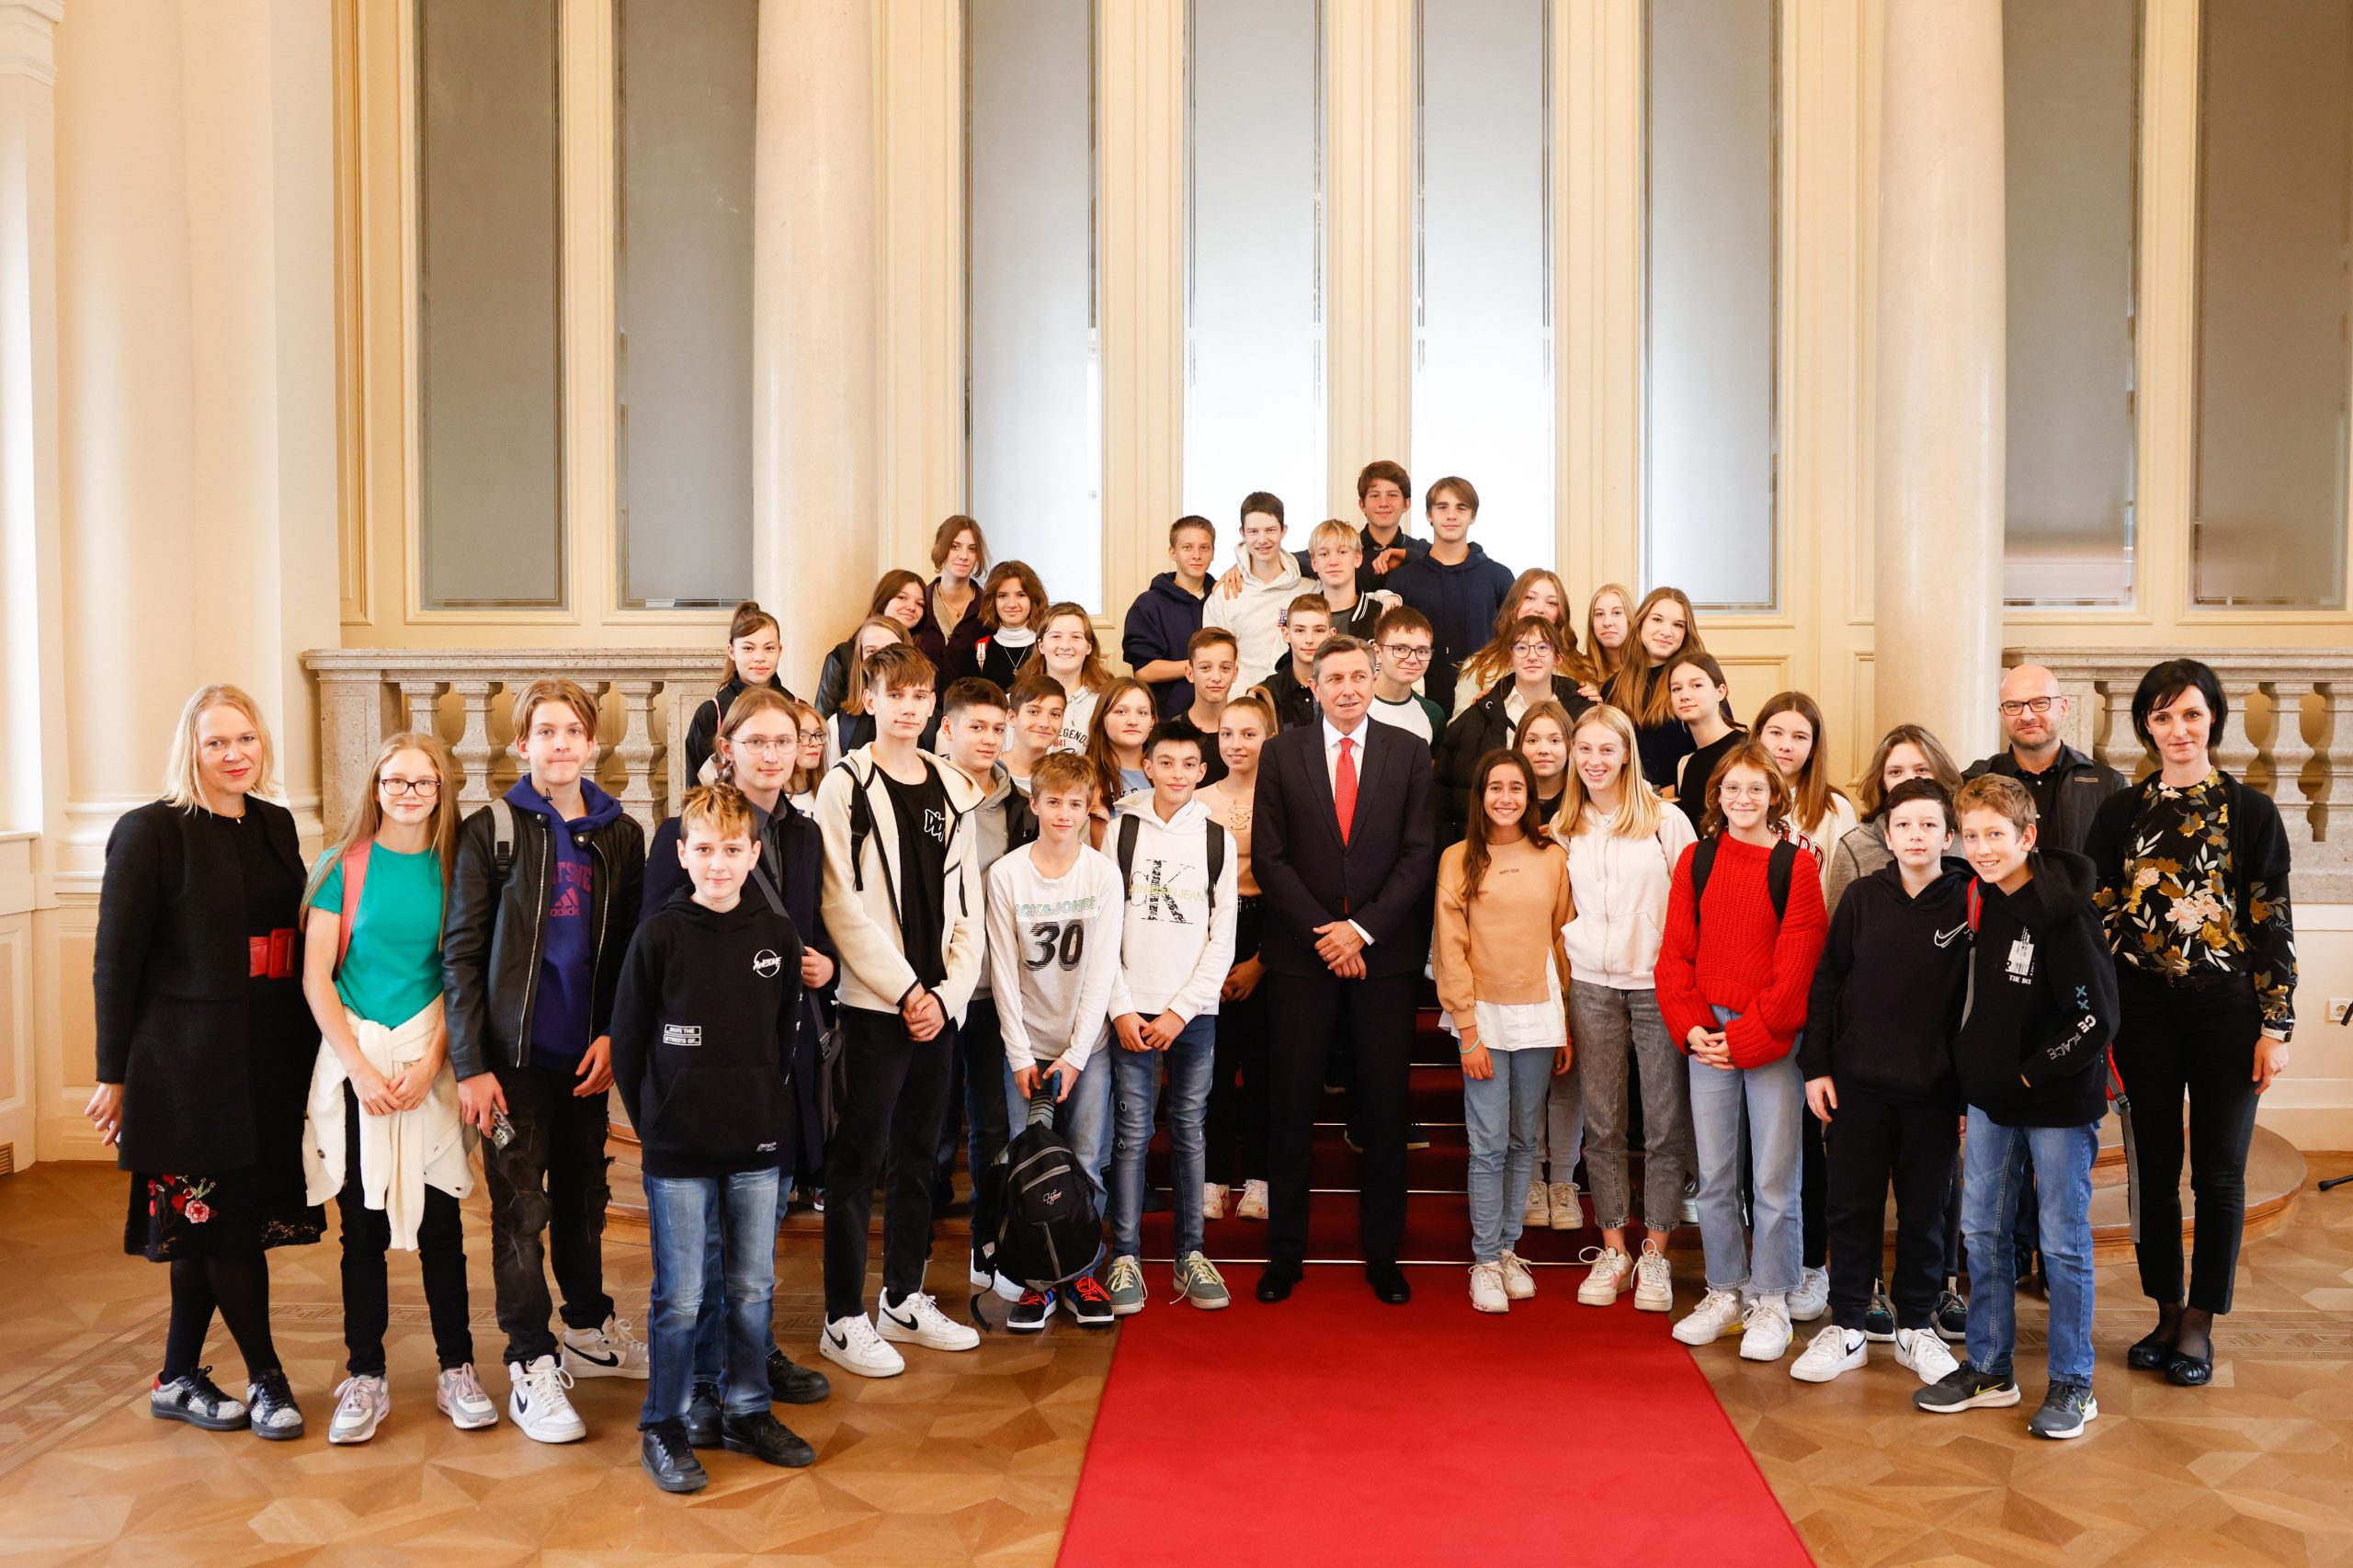 Obisk Palače in srečanje s predsednikom Borutom Pahorjem